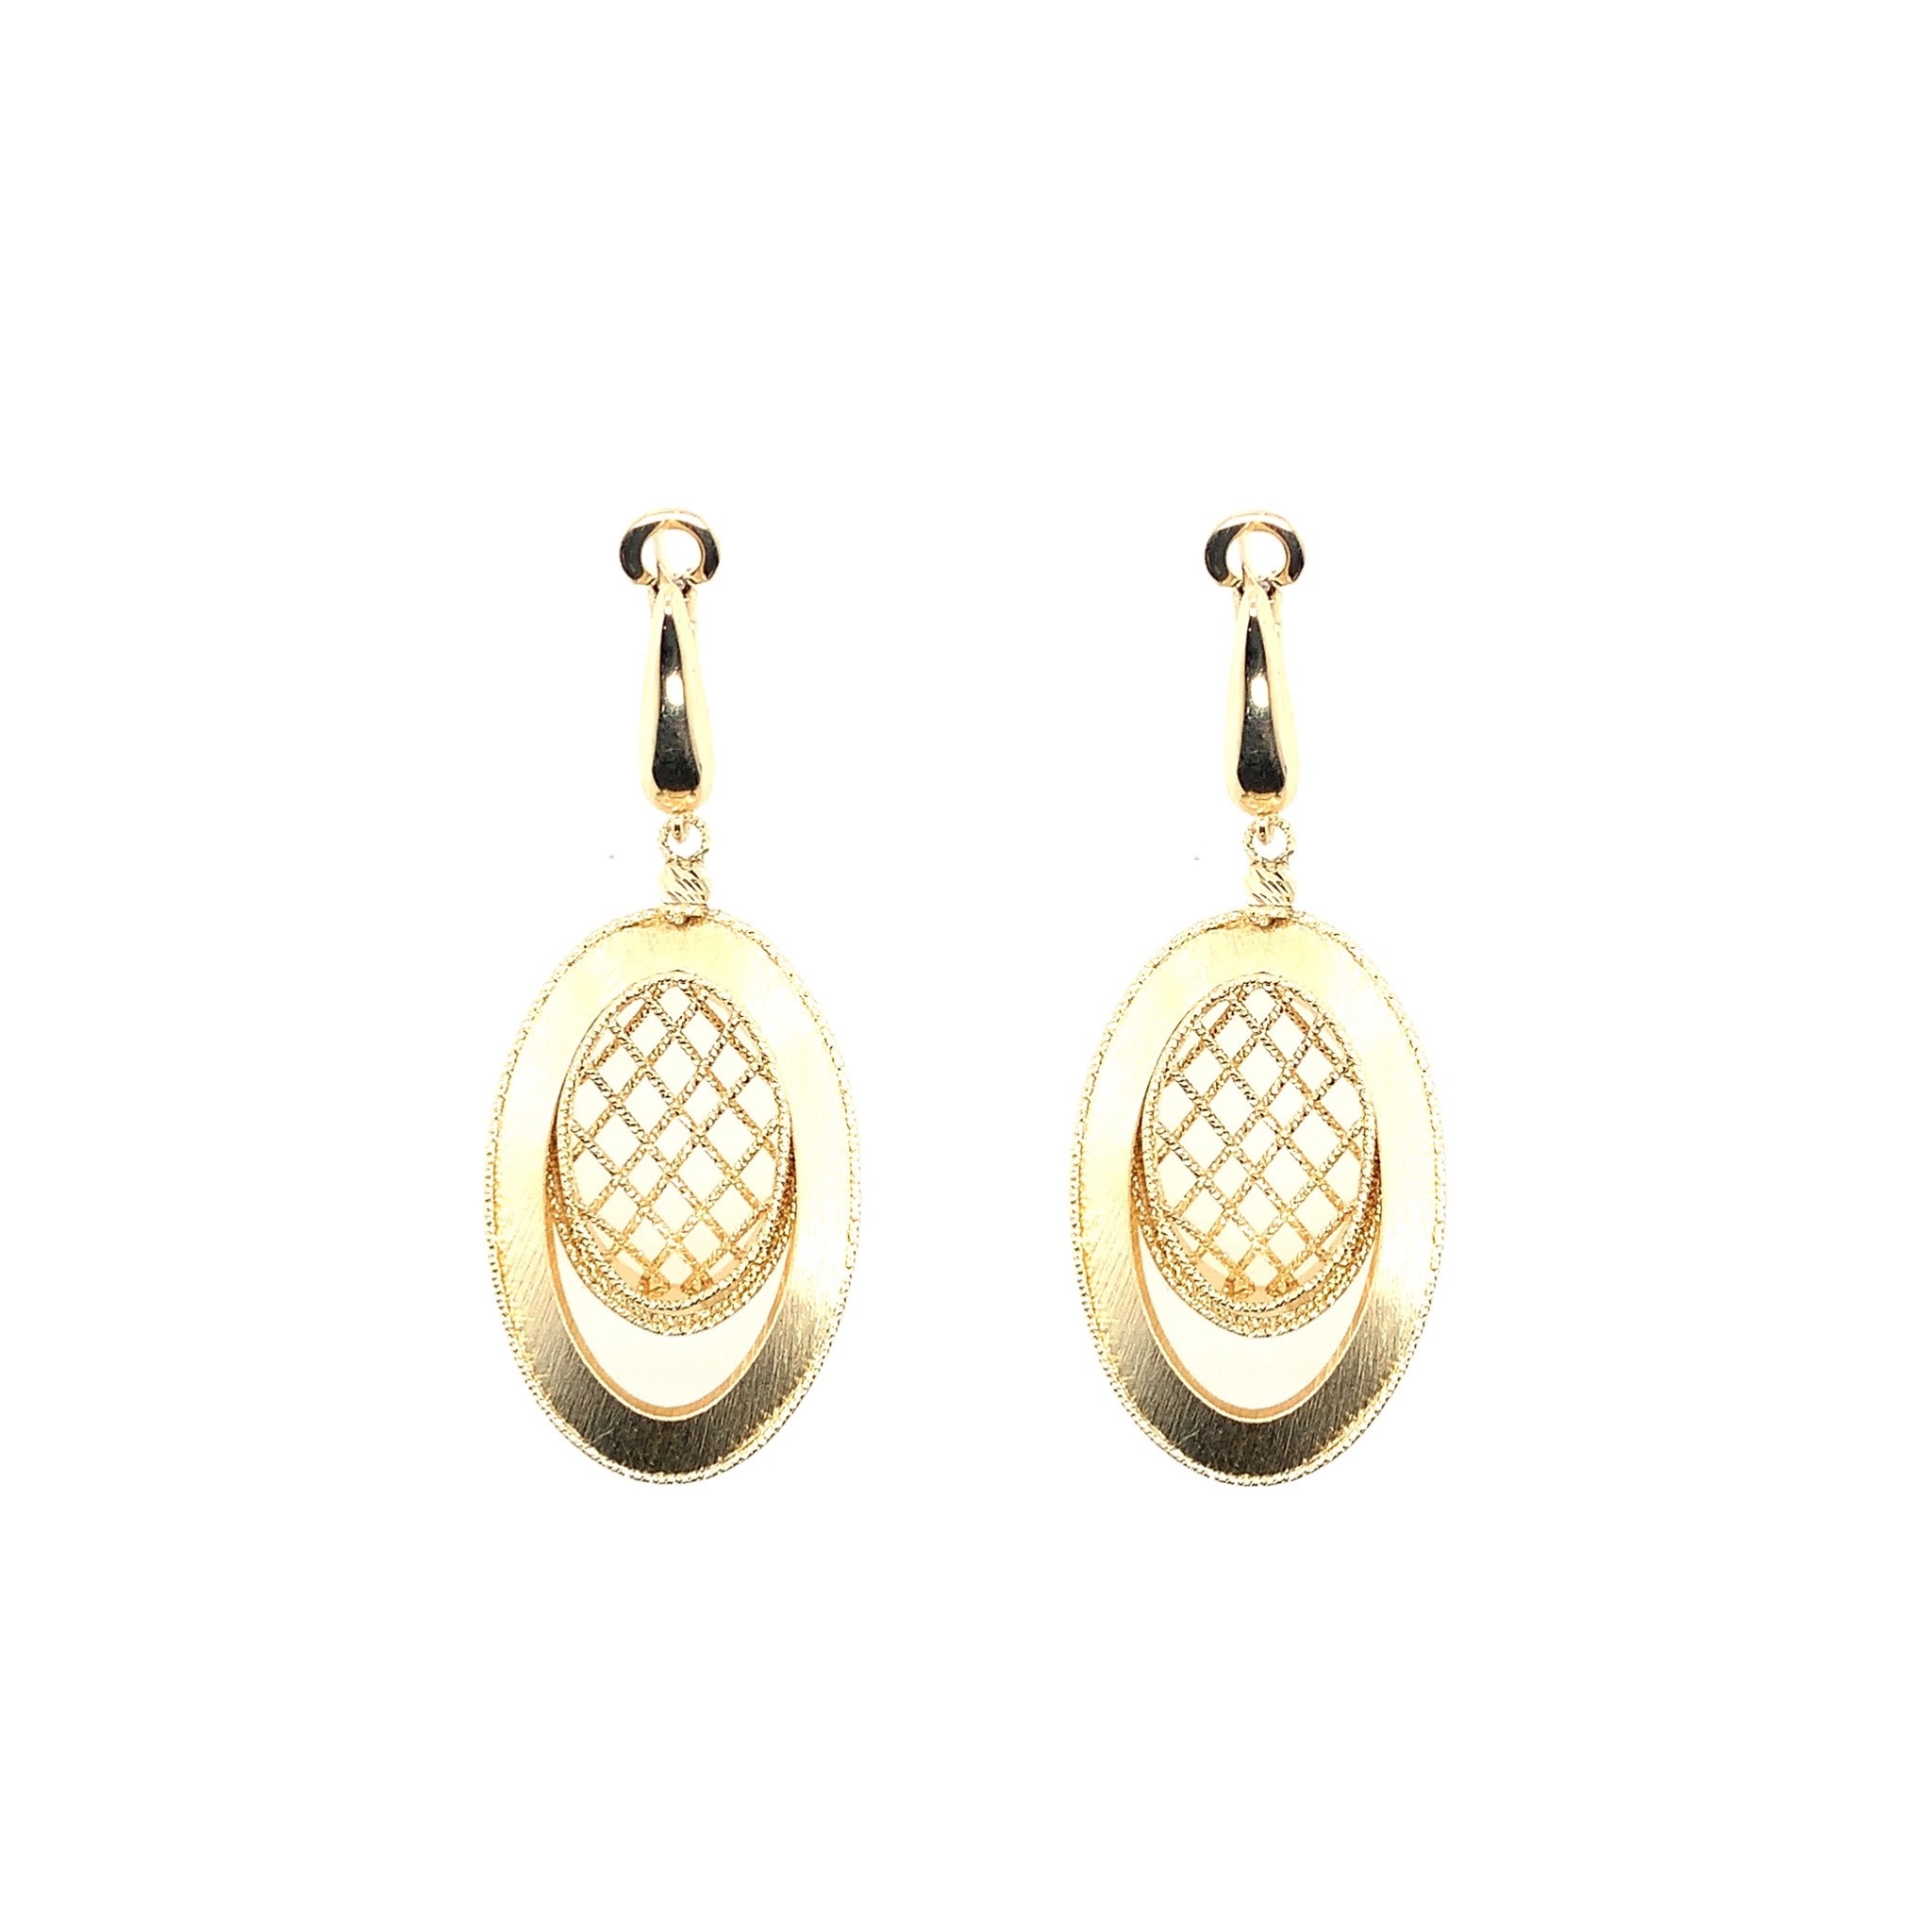 Handmade Chandelier with Pearl Designer Matt Gold Long Hanging Earrings -